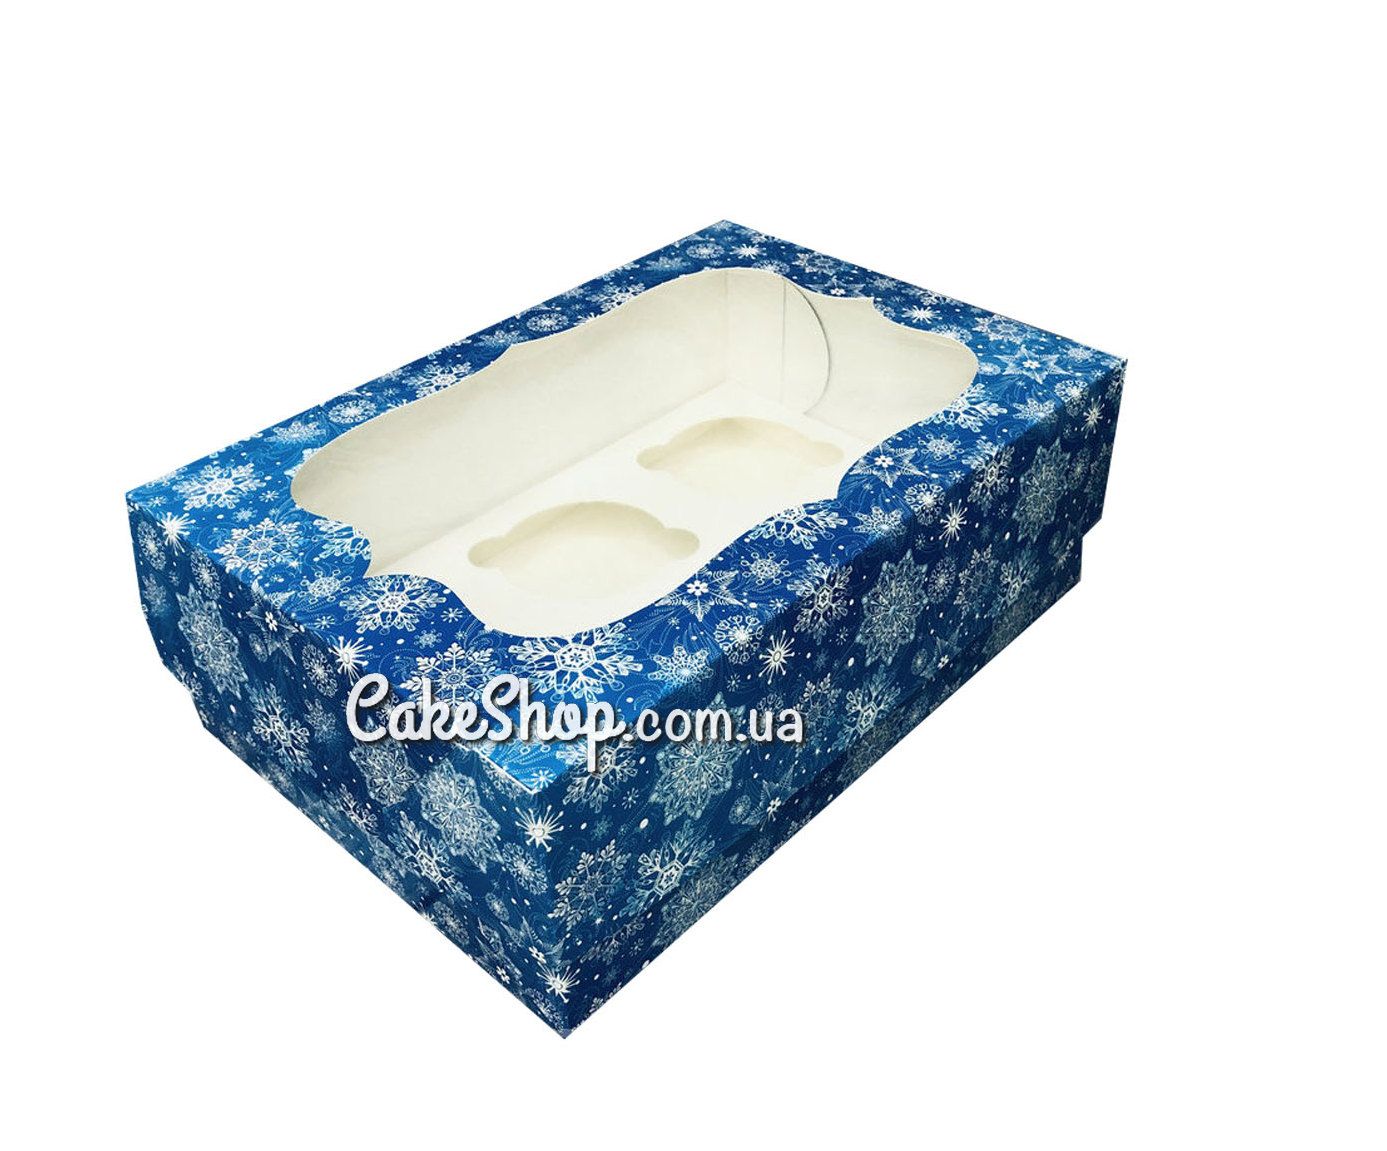 ⋗ Коробка на 6 кексов с прозрачным окном Снежинка синяя, 24х18х9 см купить в Украине ➛ CakeShop.com.ua, фото